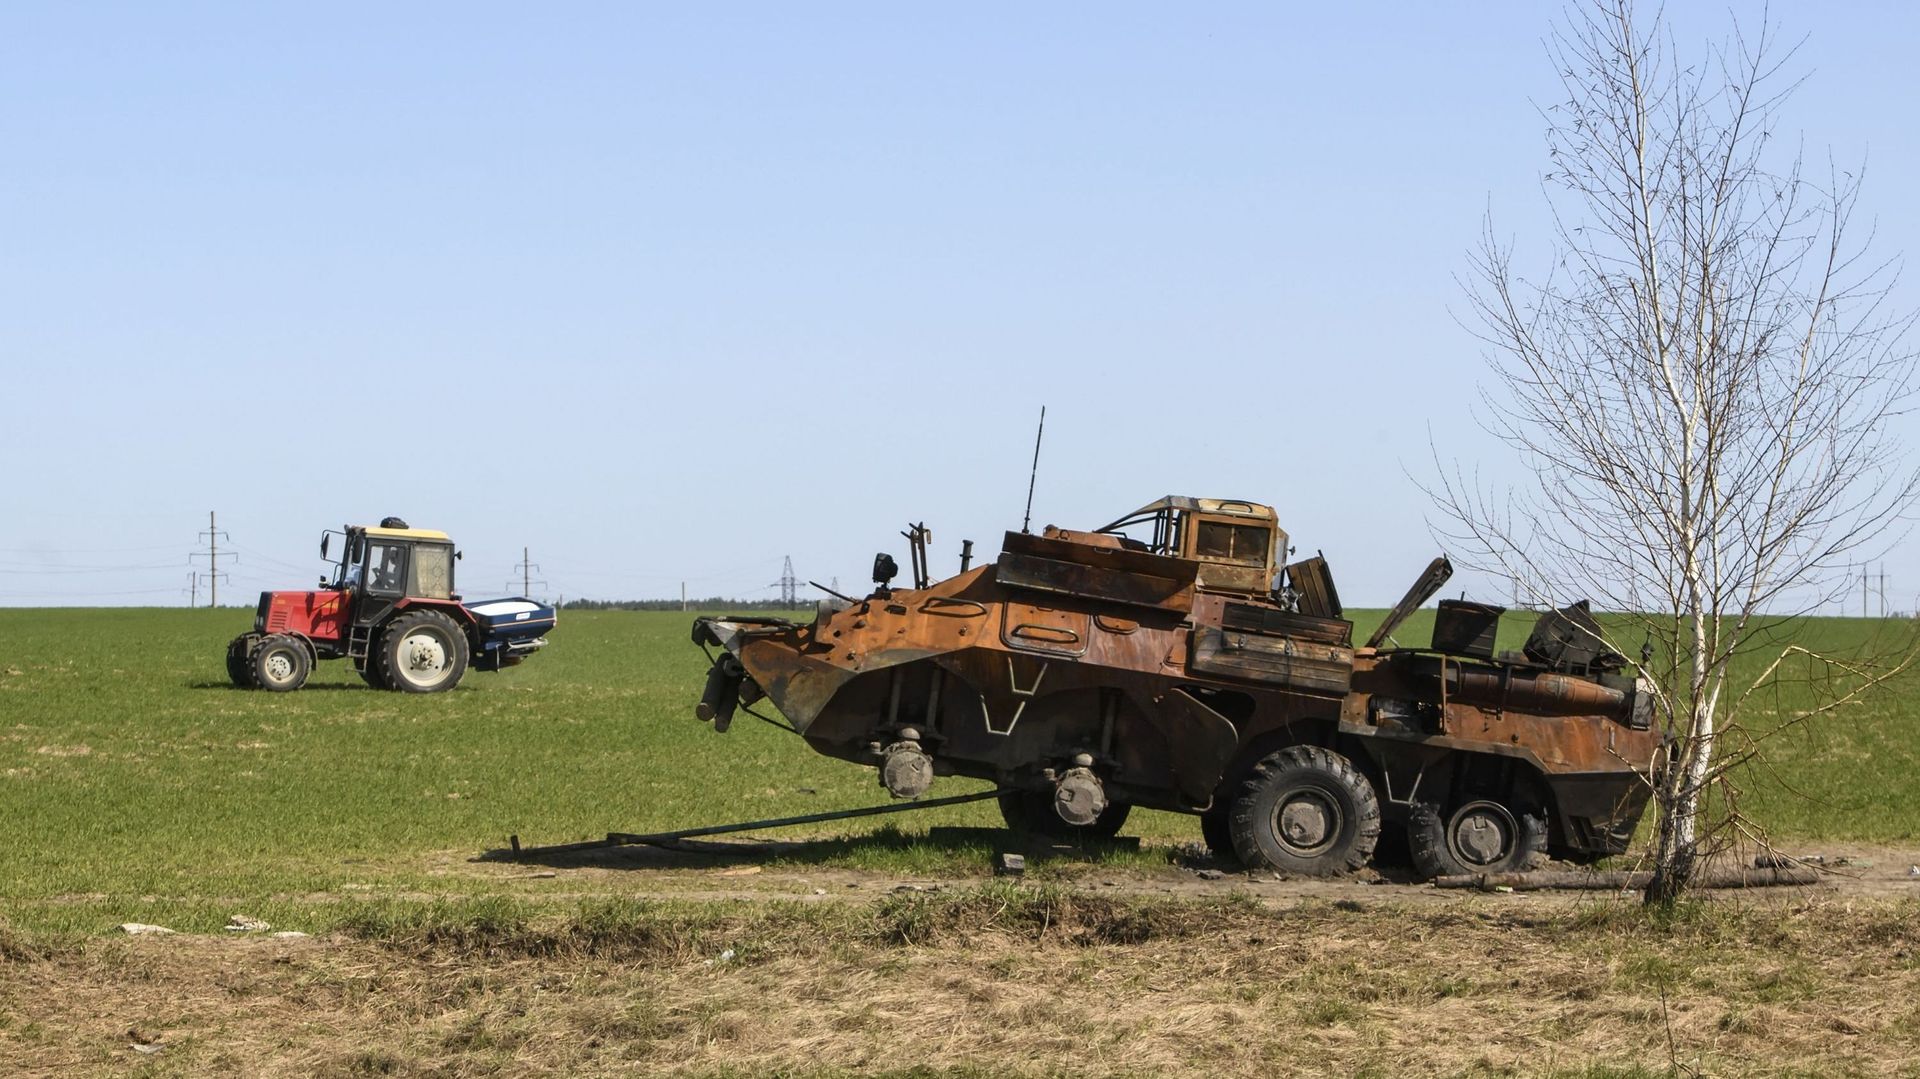 Un tracteur travaille sur un champ agricole près d'un char militaire russe détruit près de Kiev en Ukraine, le 15 avril 2022. 